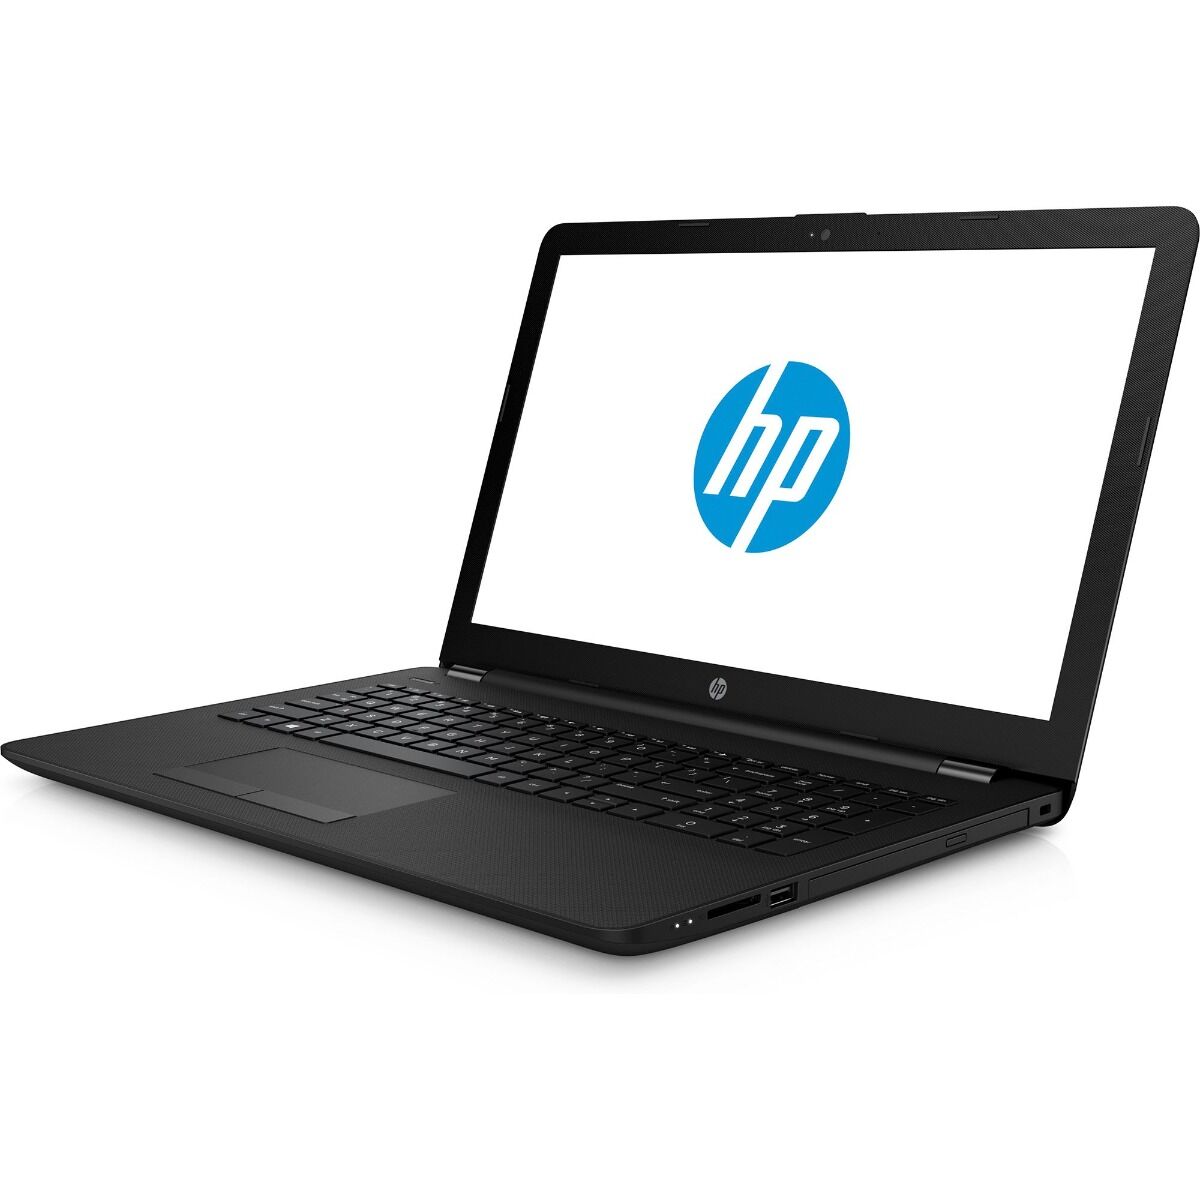 Laptop HP 15-BS021NQ, Intel Core i3-6006U, 4GB DDR4, HDD 500GB, AMD Radeon 520 2GB